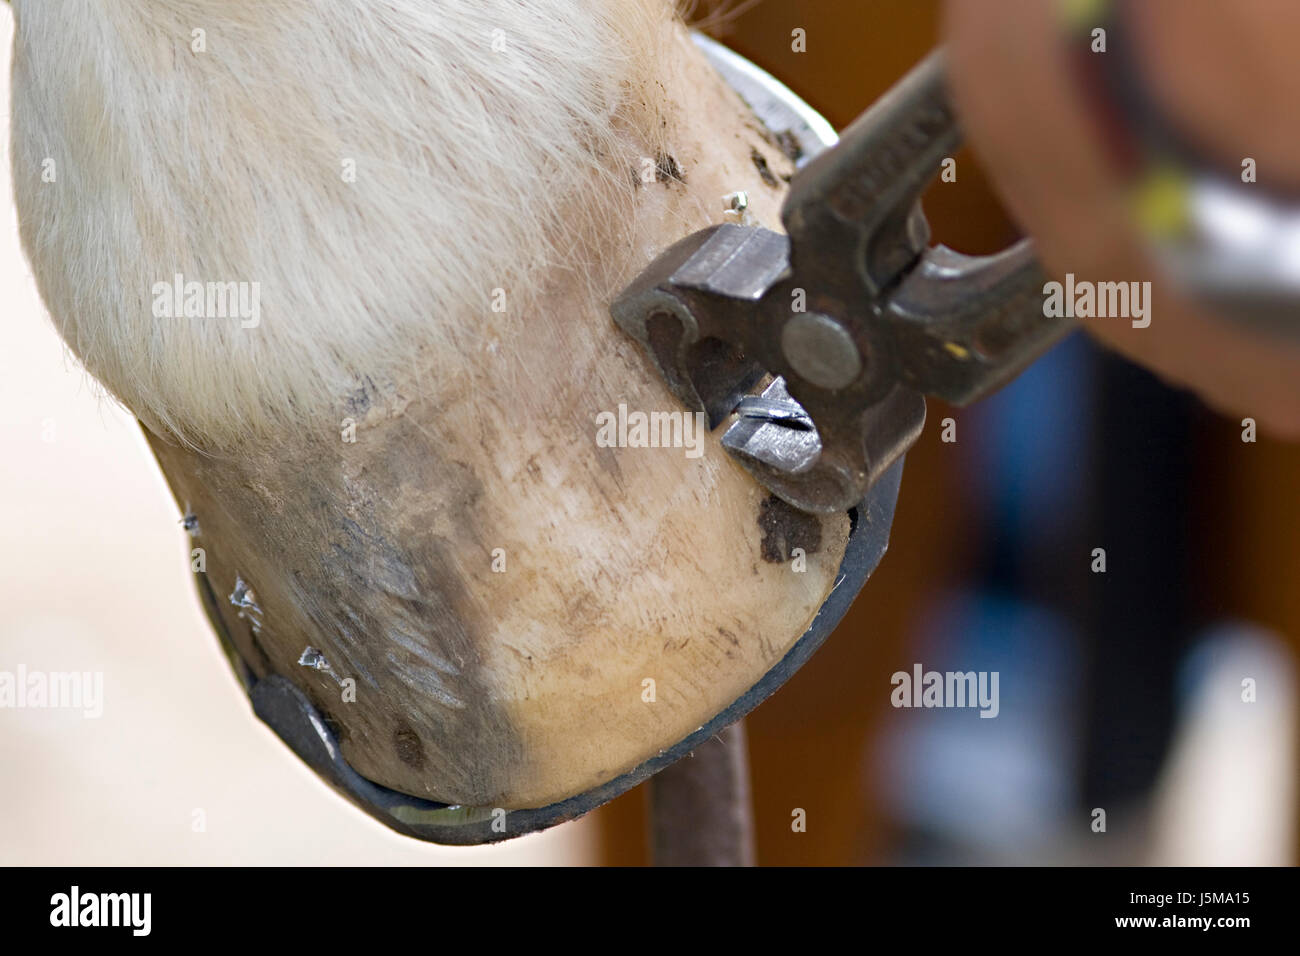 Pferd Eisen Fortbewegung Fuß Metall versiert halten schützen Schutz Nagel getragen smith Stockfoto